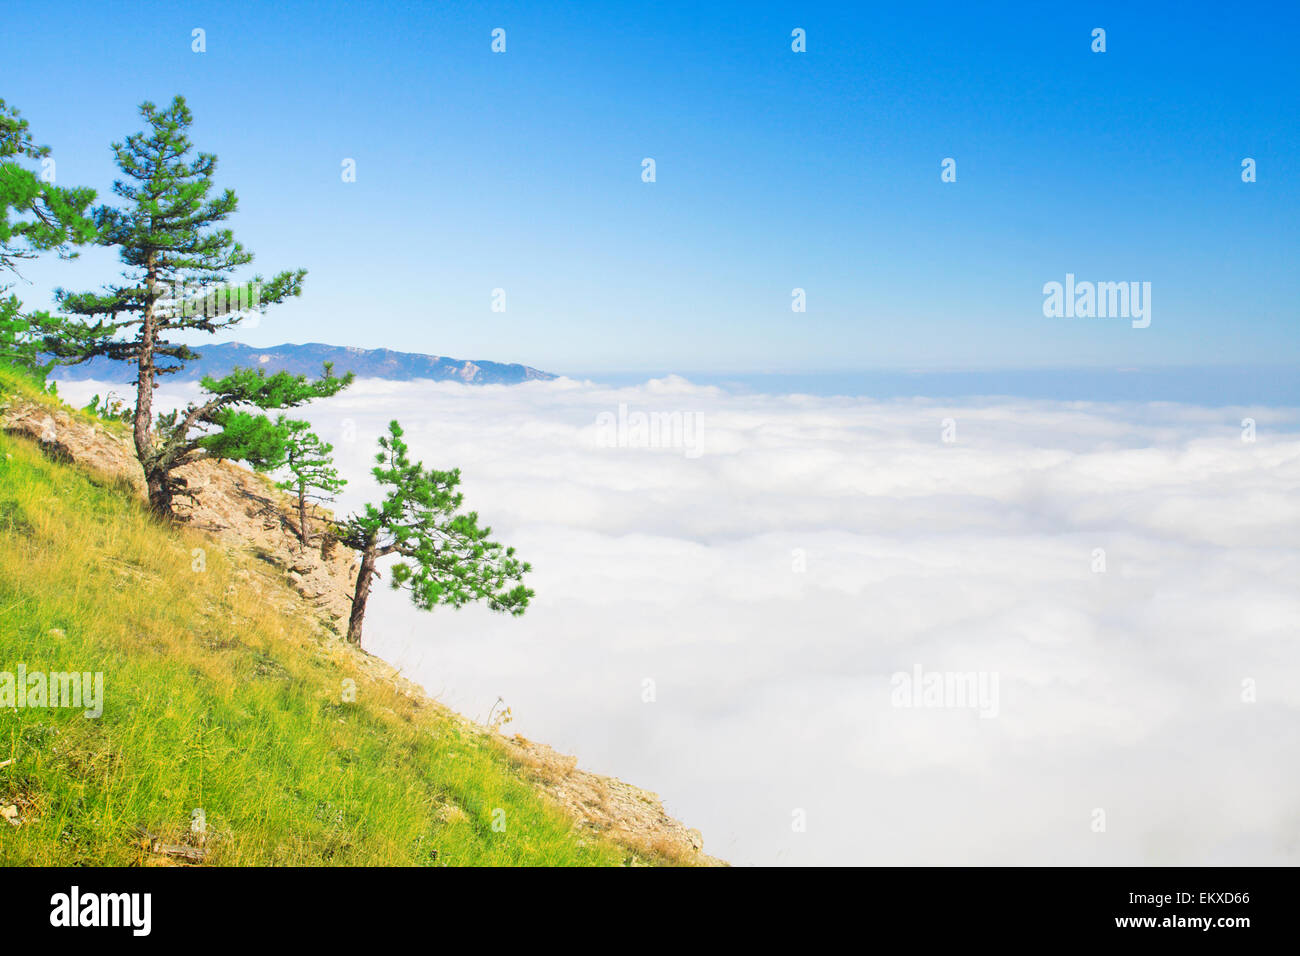 Alta montagna con alberi di pino su nuvole bianche Foto Stock